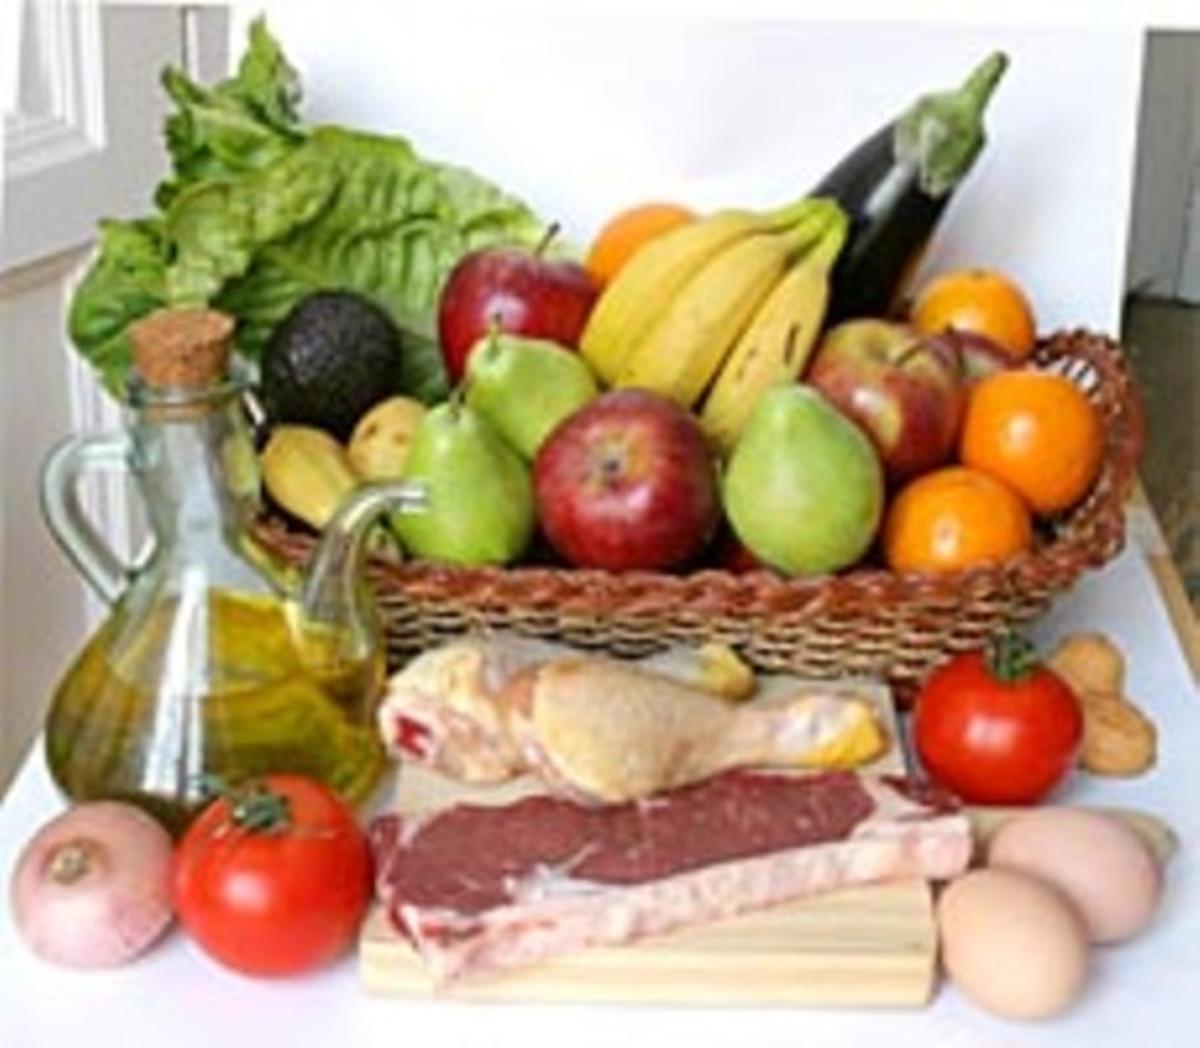 Varios alimentos que forman parte de la dieta mediterránea.